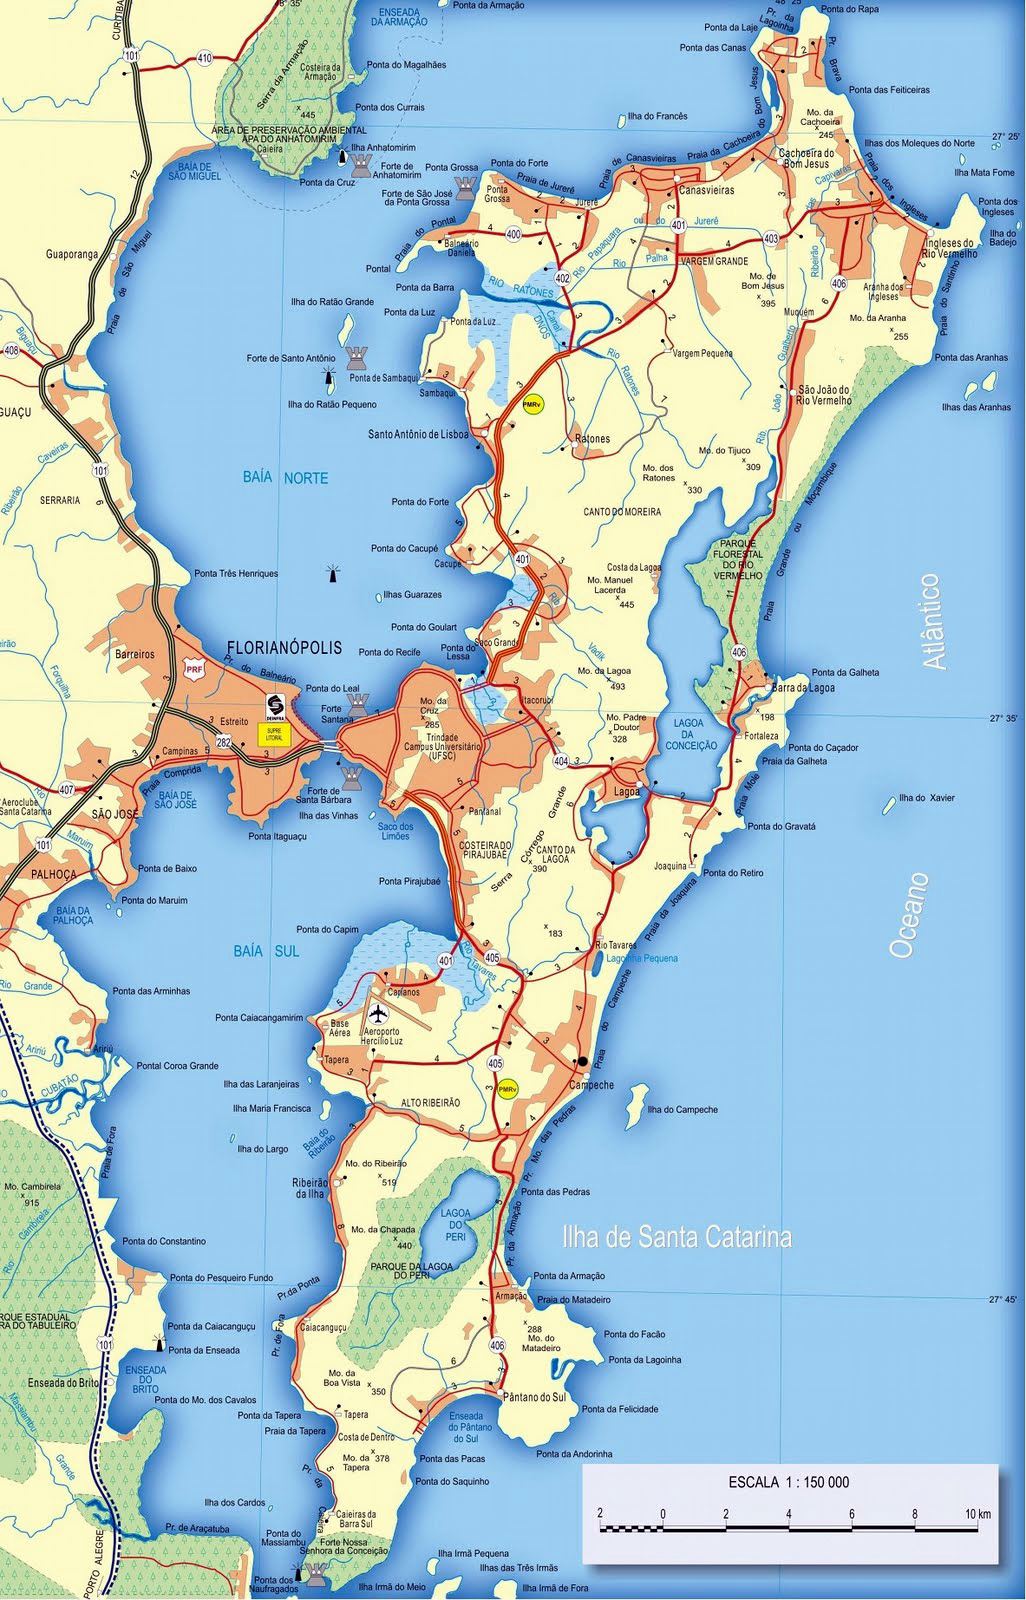 Stadtplan von Florianopolis | Detaillierte gedruckte Karten von